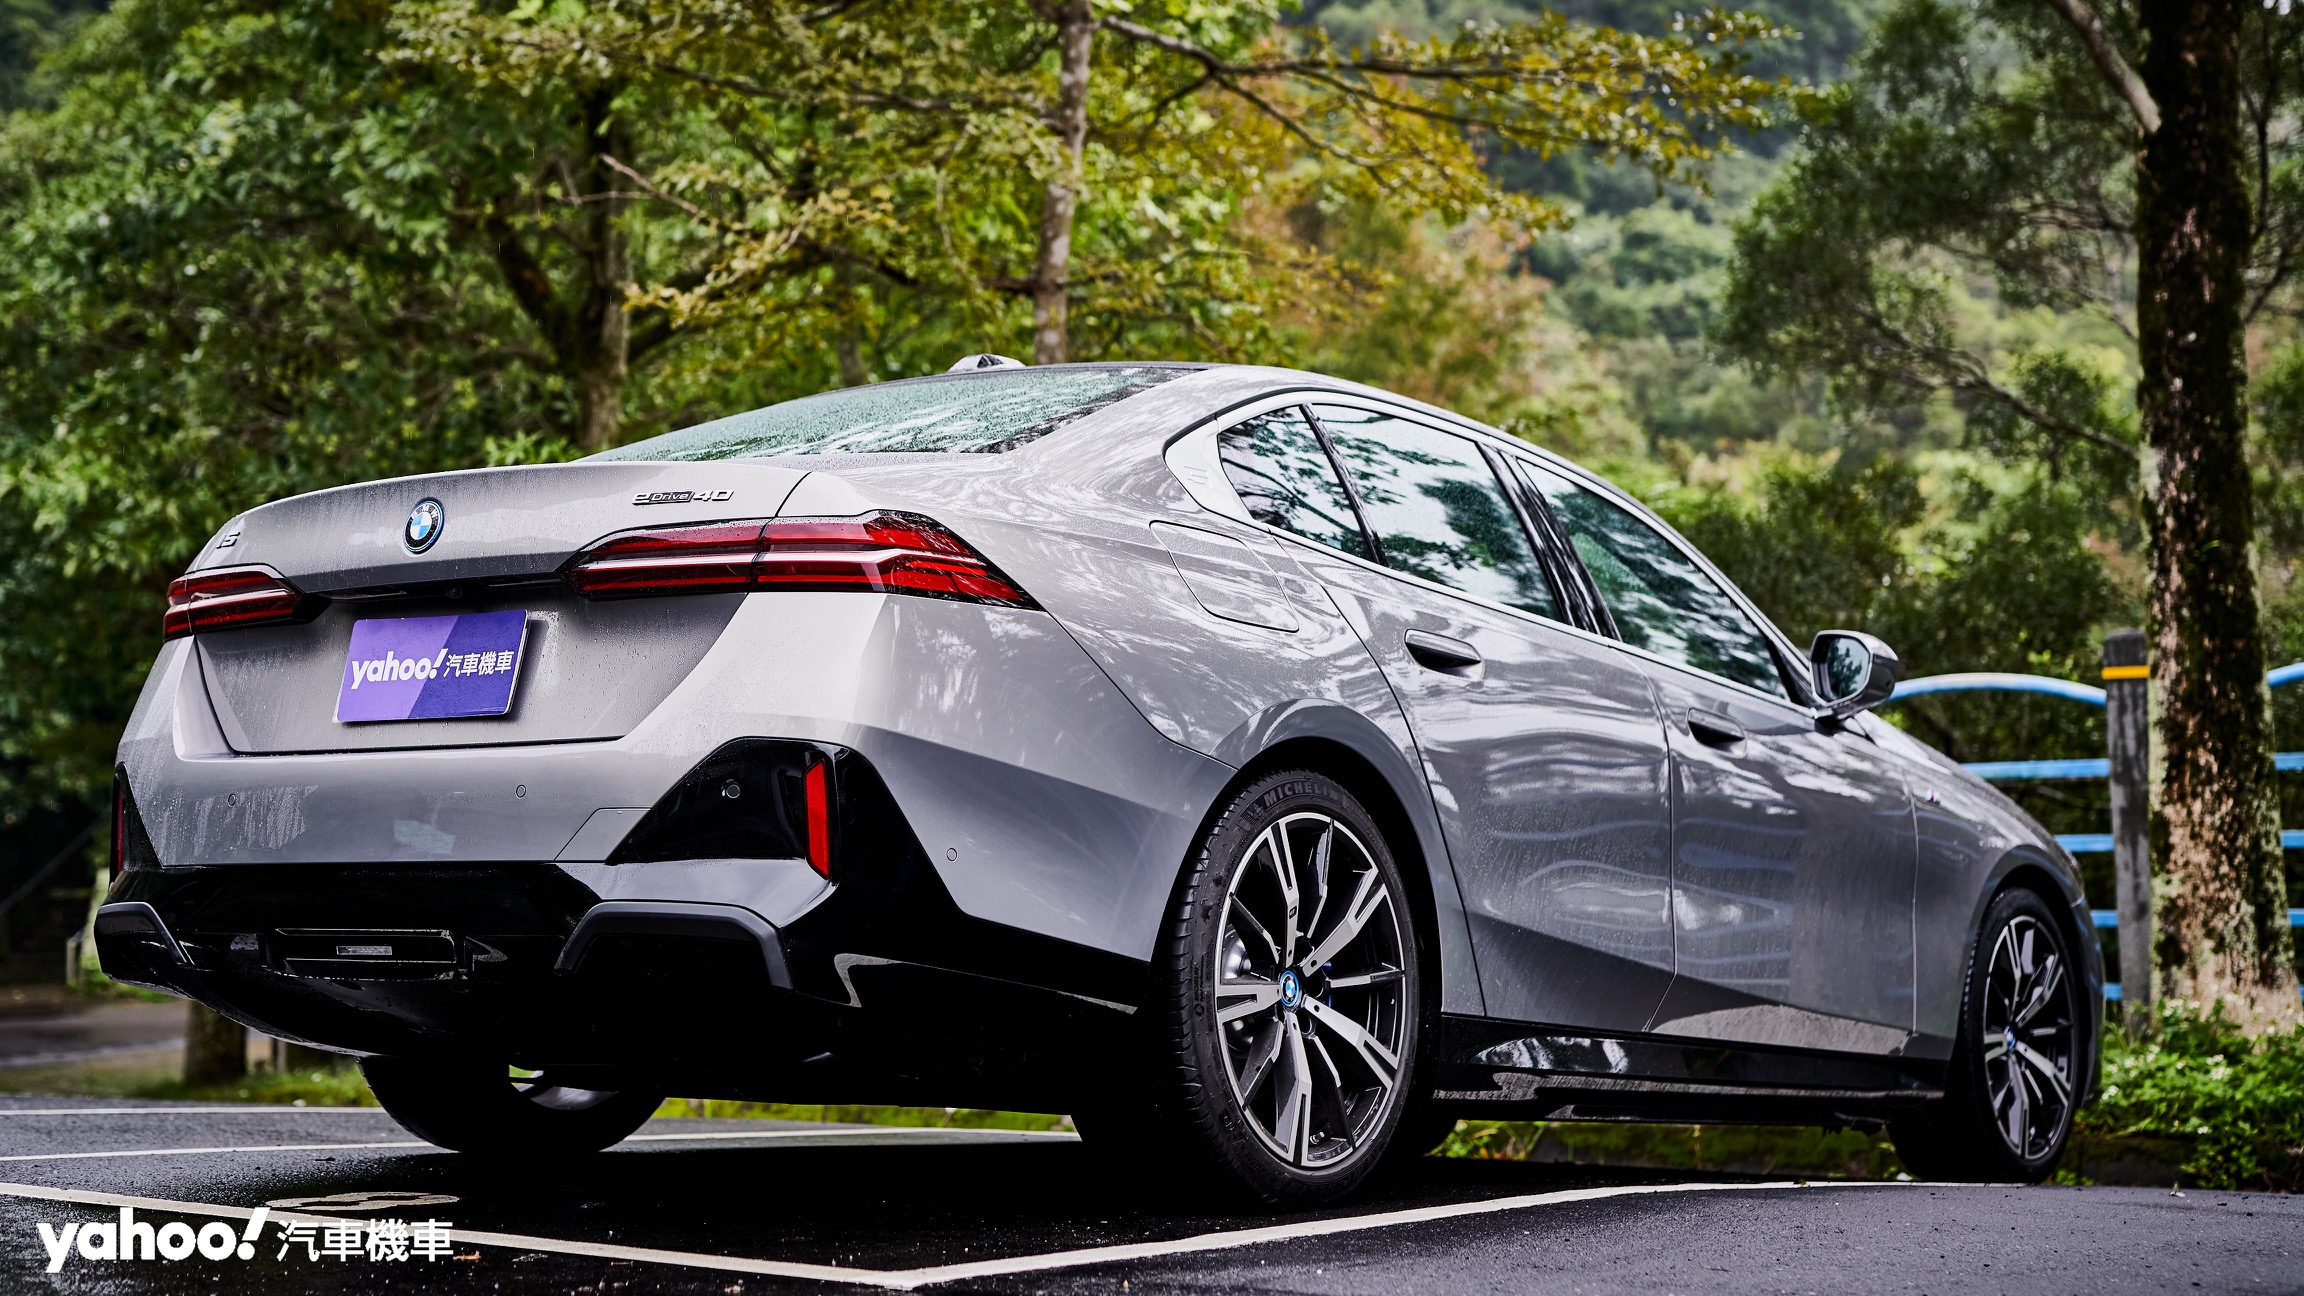 同樣中規中矩的車尾則透過尾燈架構、清晰的分層呈現BMW 5 Series帶有優雅的科技感。